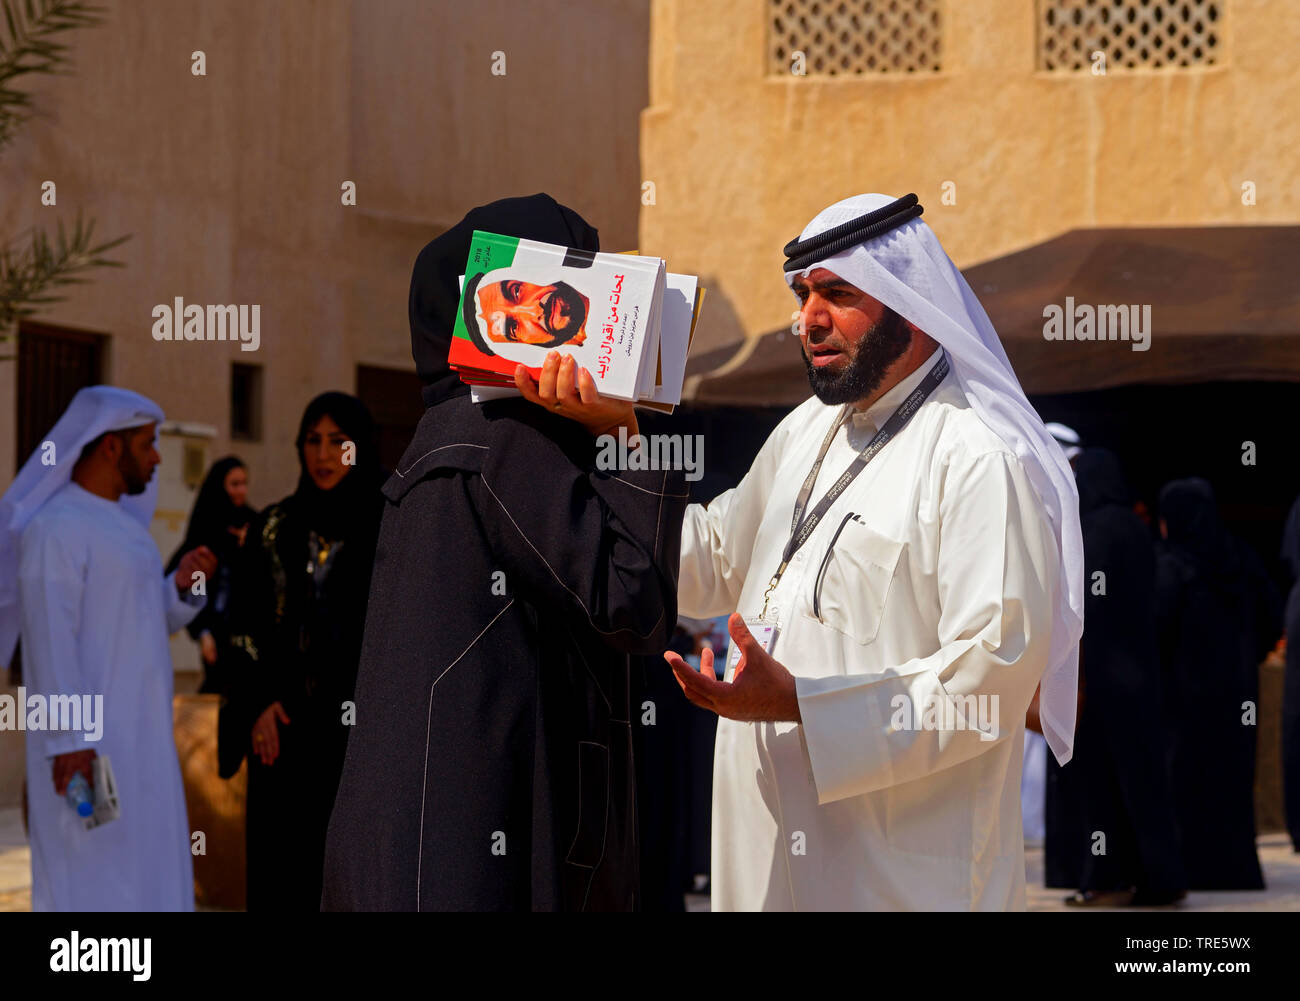 Donna con libri di Seikh Zayed che hanno costruito la comunità di Emirates. La città vecchia di Dubai. Emirati Arabi Uniti, Emirati Arabi Uniti Dubai Foto Stock